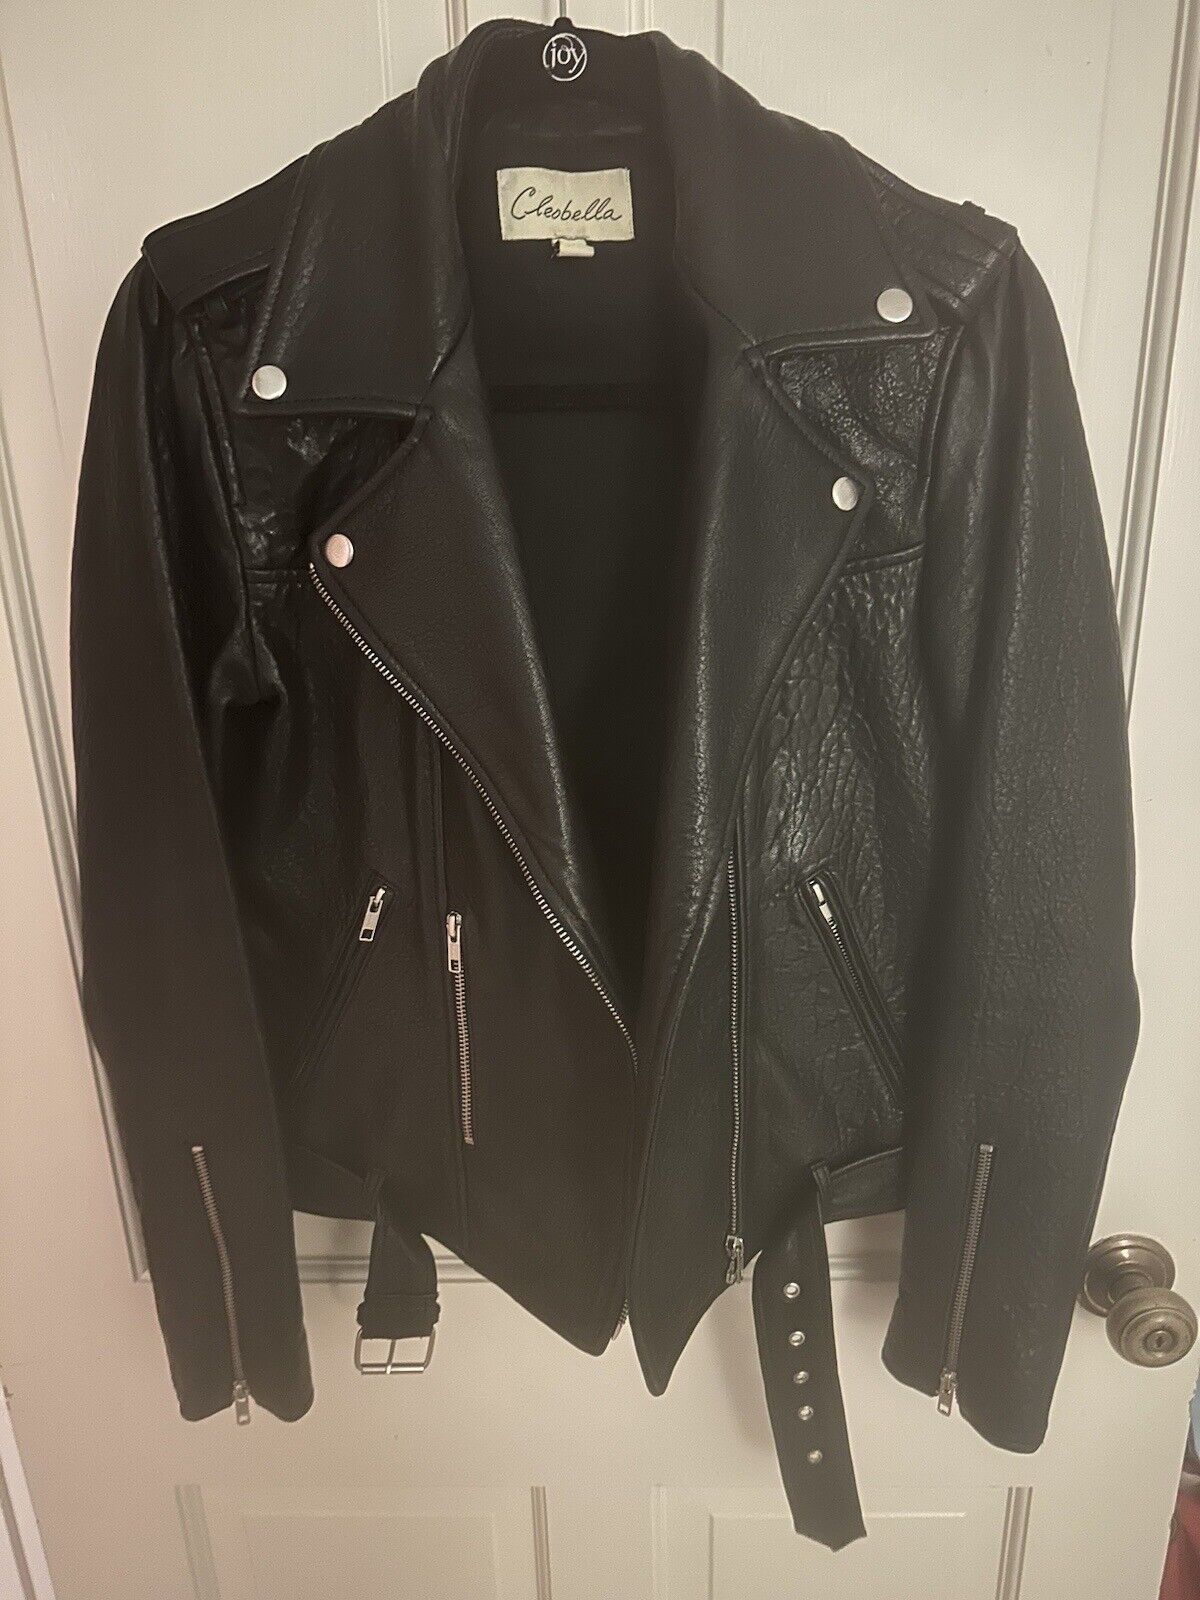 Cleobella Black Leather Moro Jacket Size Medium - image 1